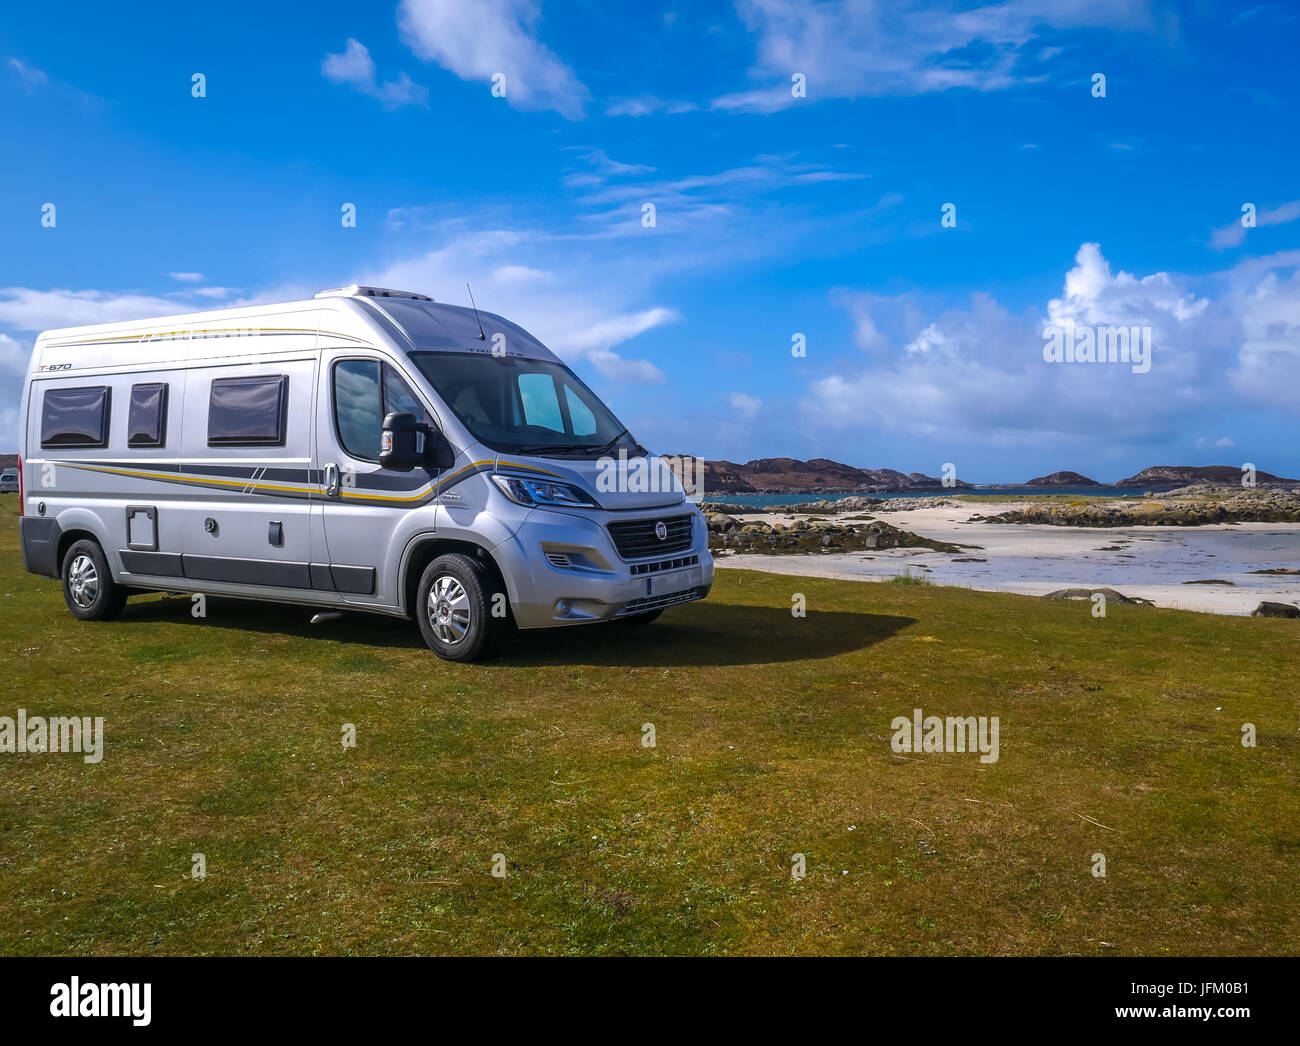 Fiat Wohnmobil auf entfernten Lage am Meer Fidden Bauernhof Campingplatz geparkt, Isle of Mull, Inneren Hebriden, Schottland, Großbritannien, mit weißen Sandstrand an einem sonnigen Tag Stockfoto